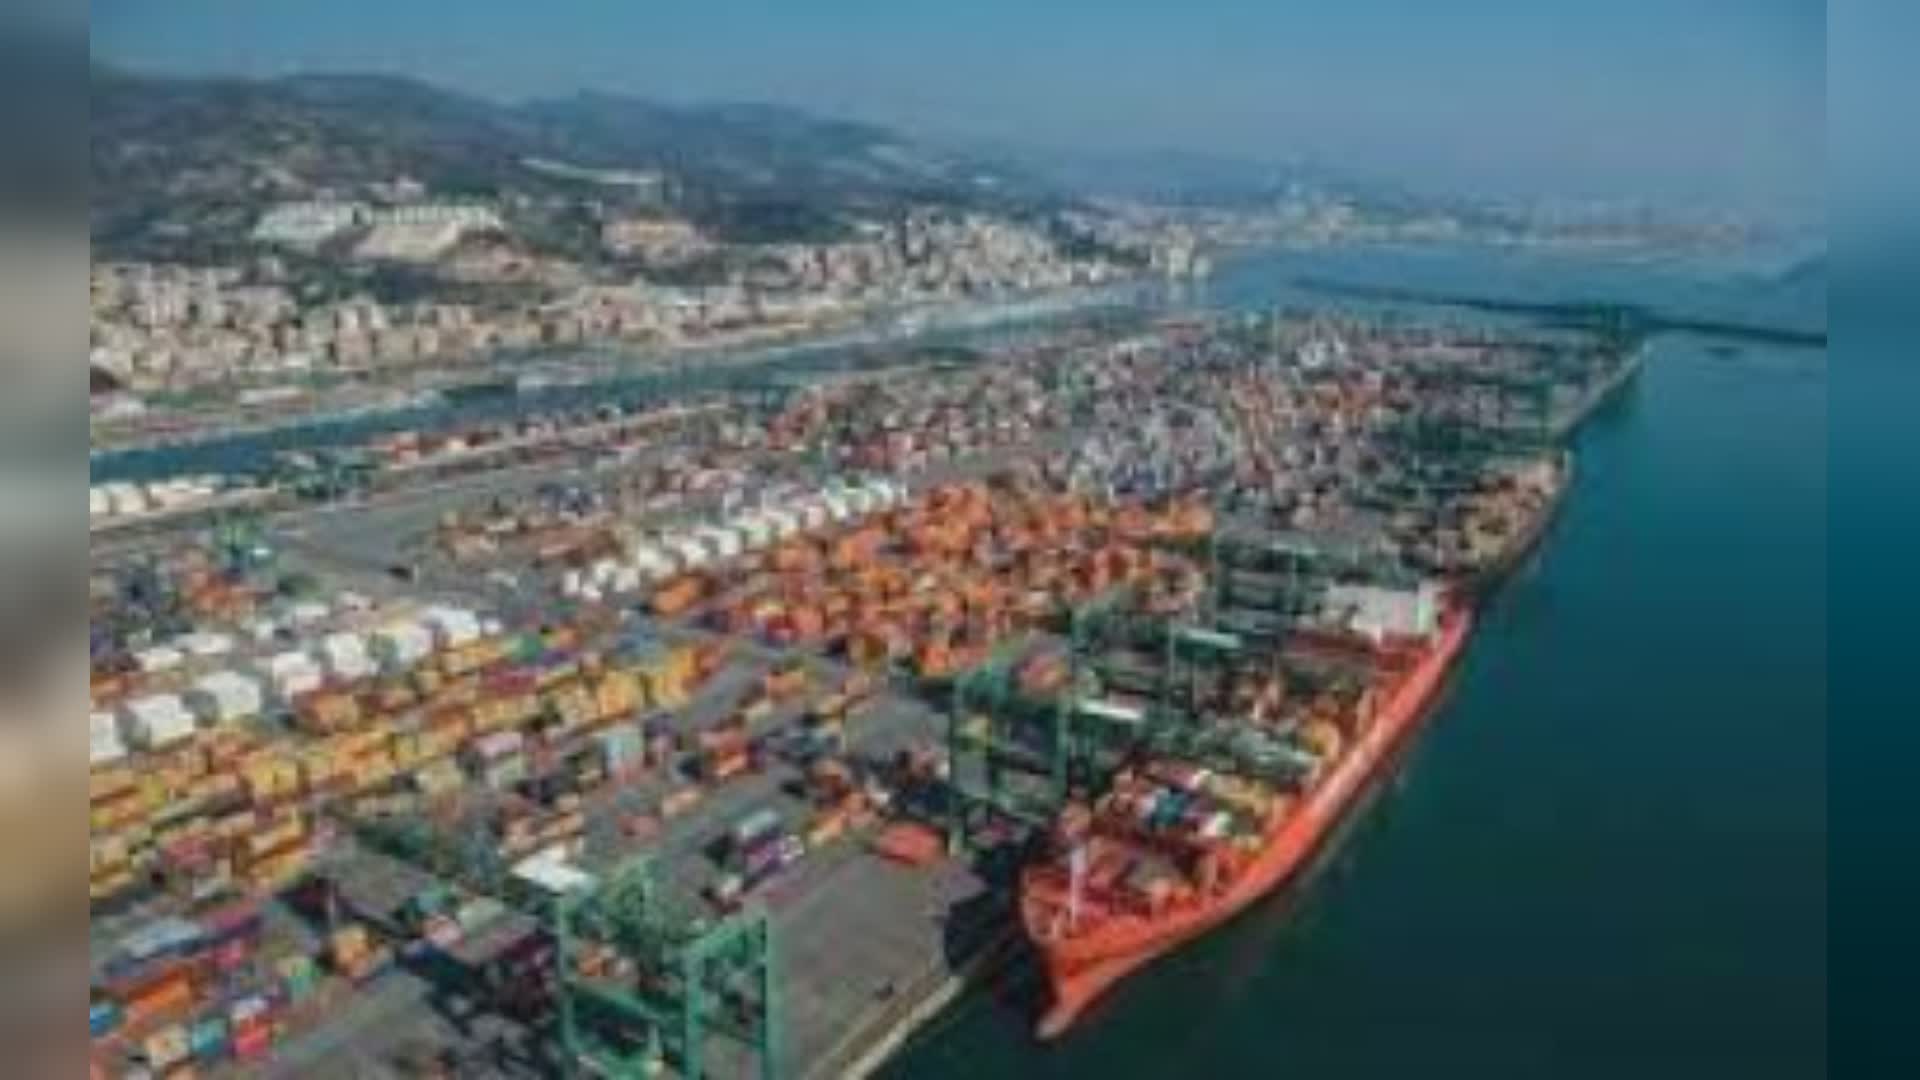 Porti, Traversi (M5S): "Delirante la privatizzazione per far cassa, come vuole Tajani"